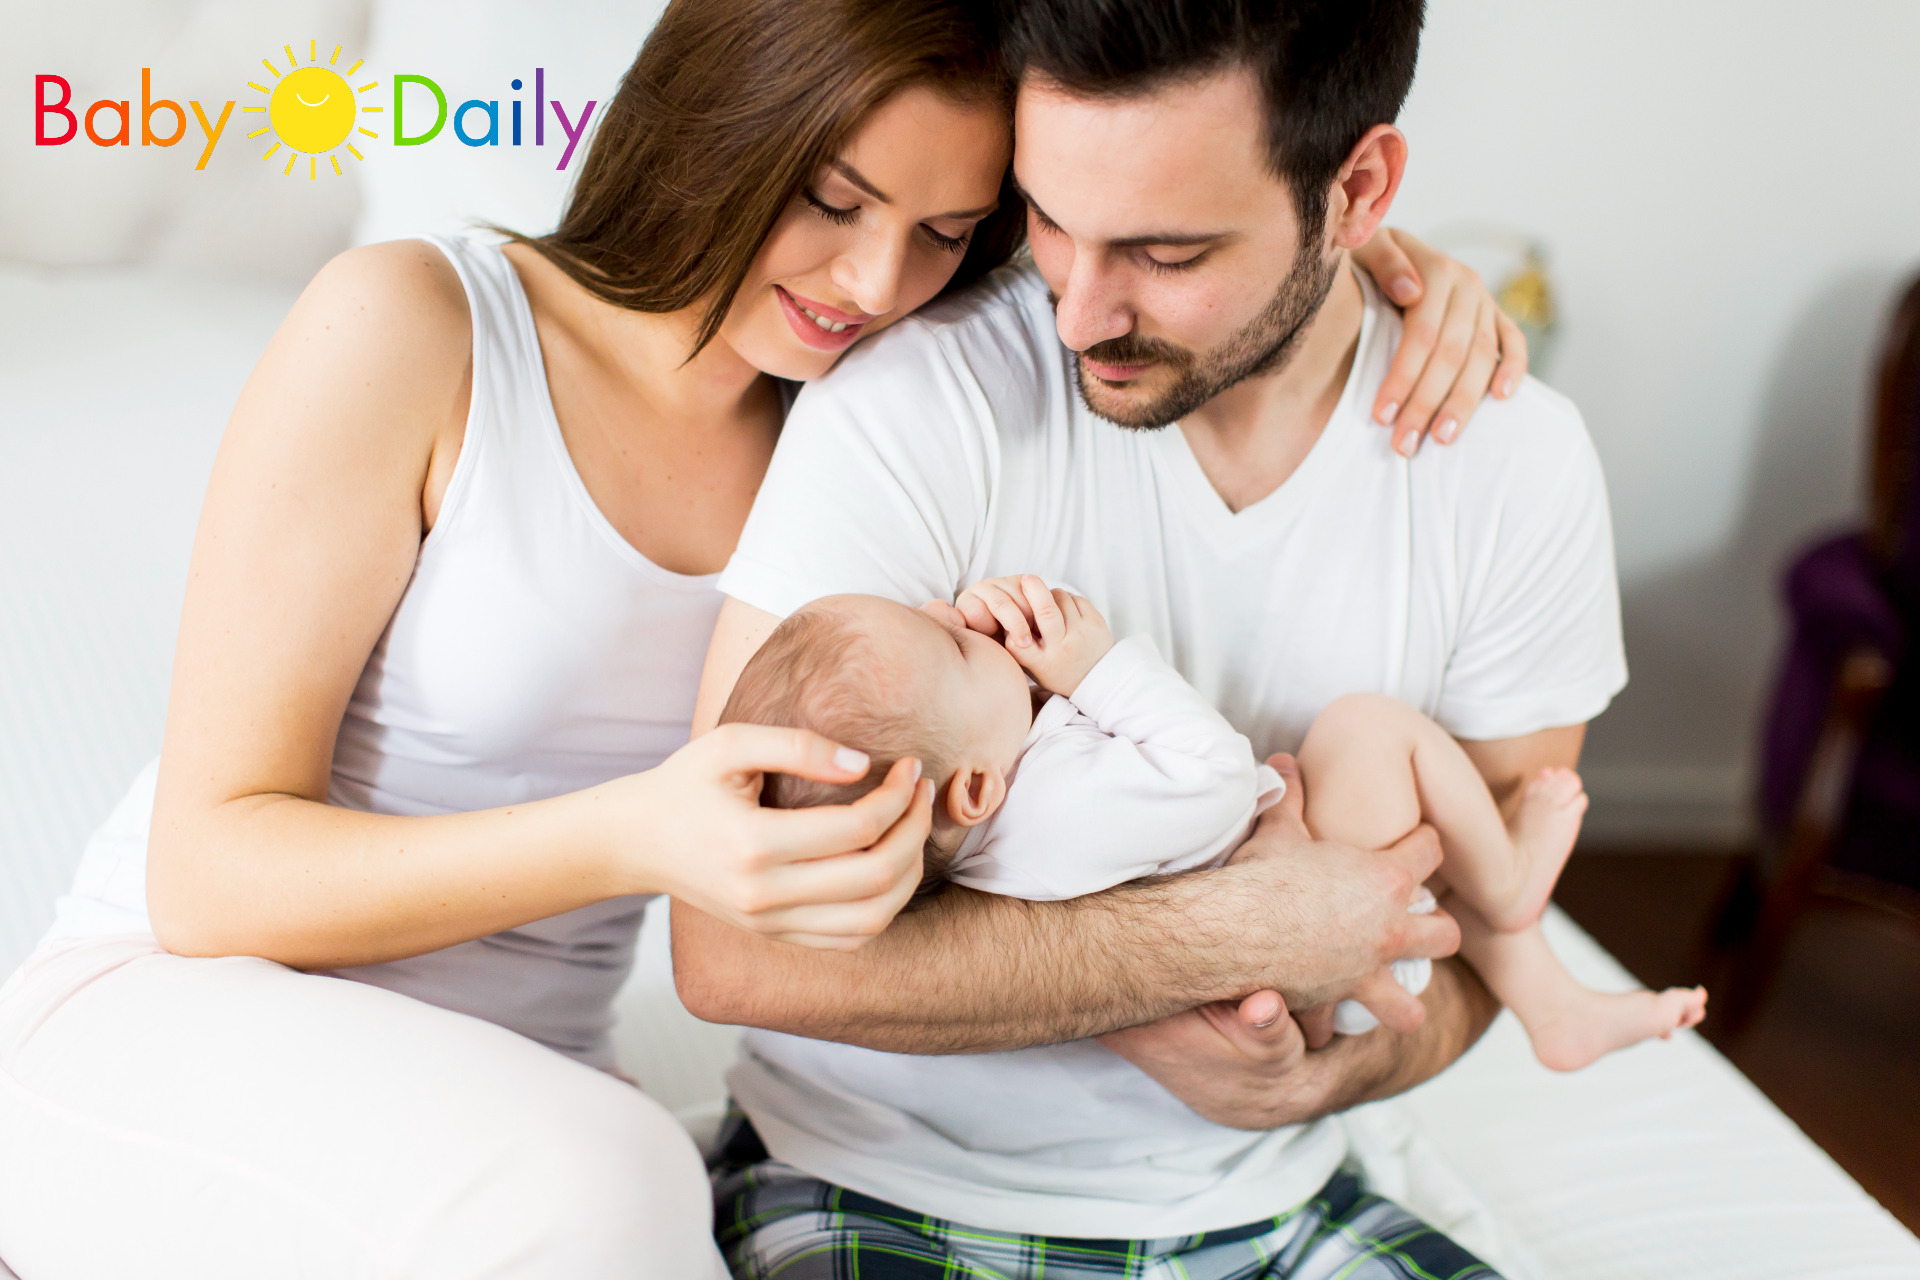 Baby Daily, el nuevo sitio editorial del que todos hablan